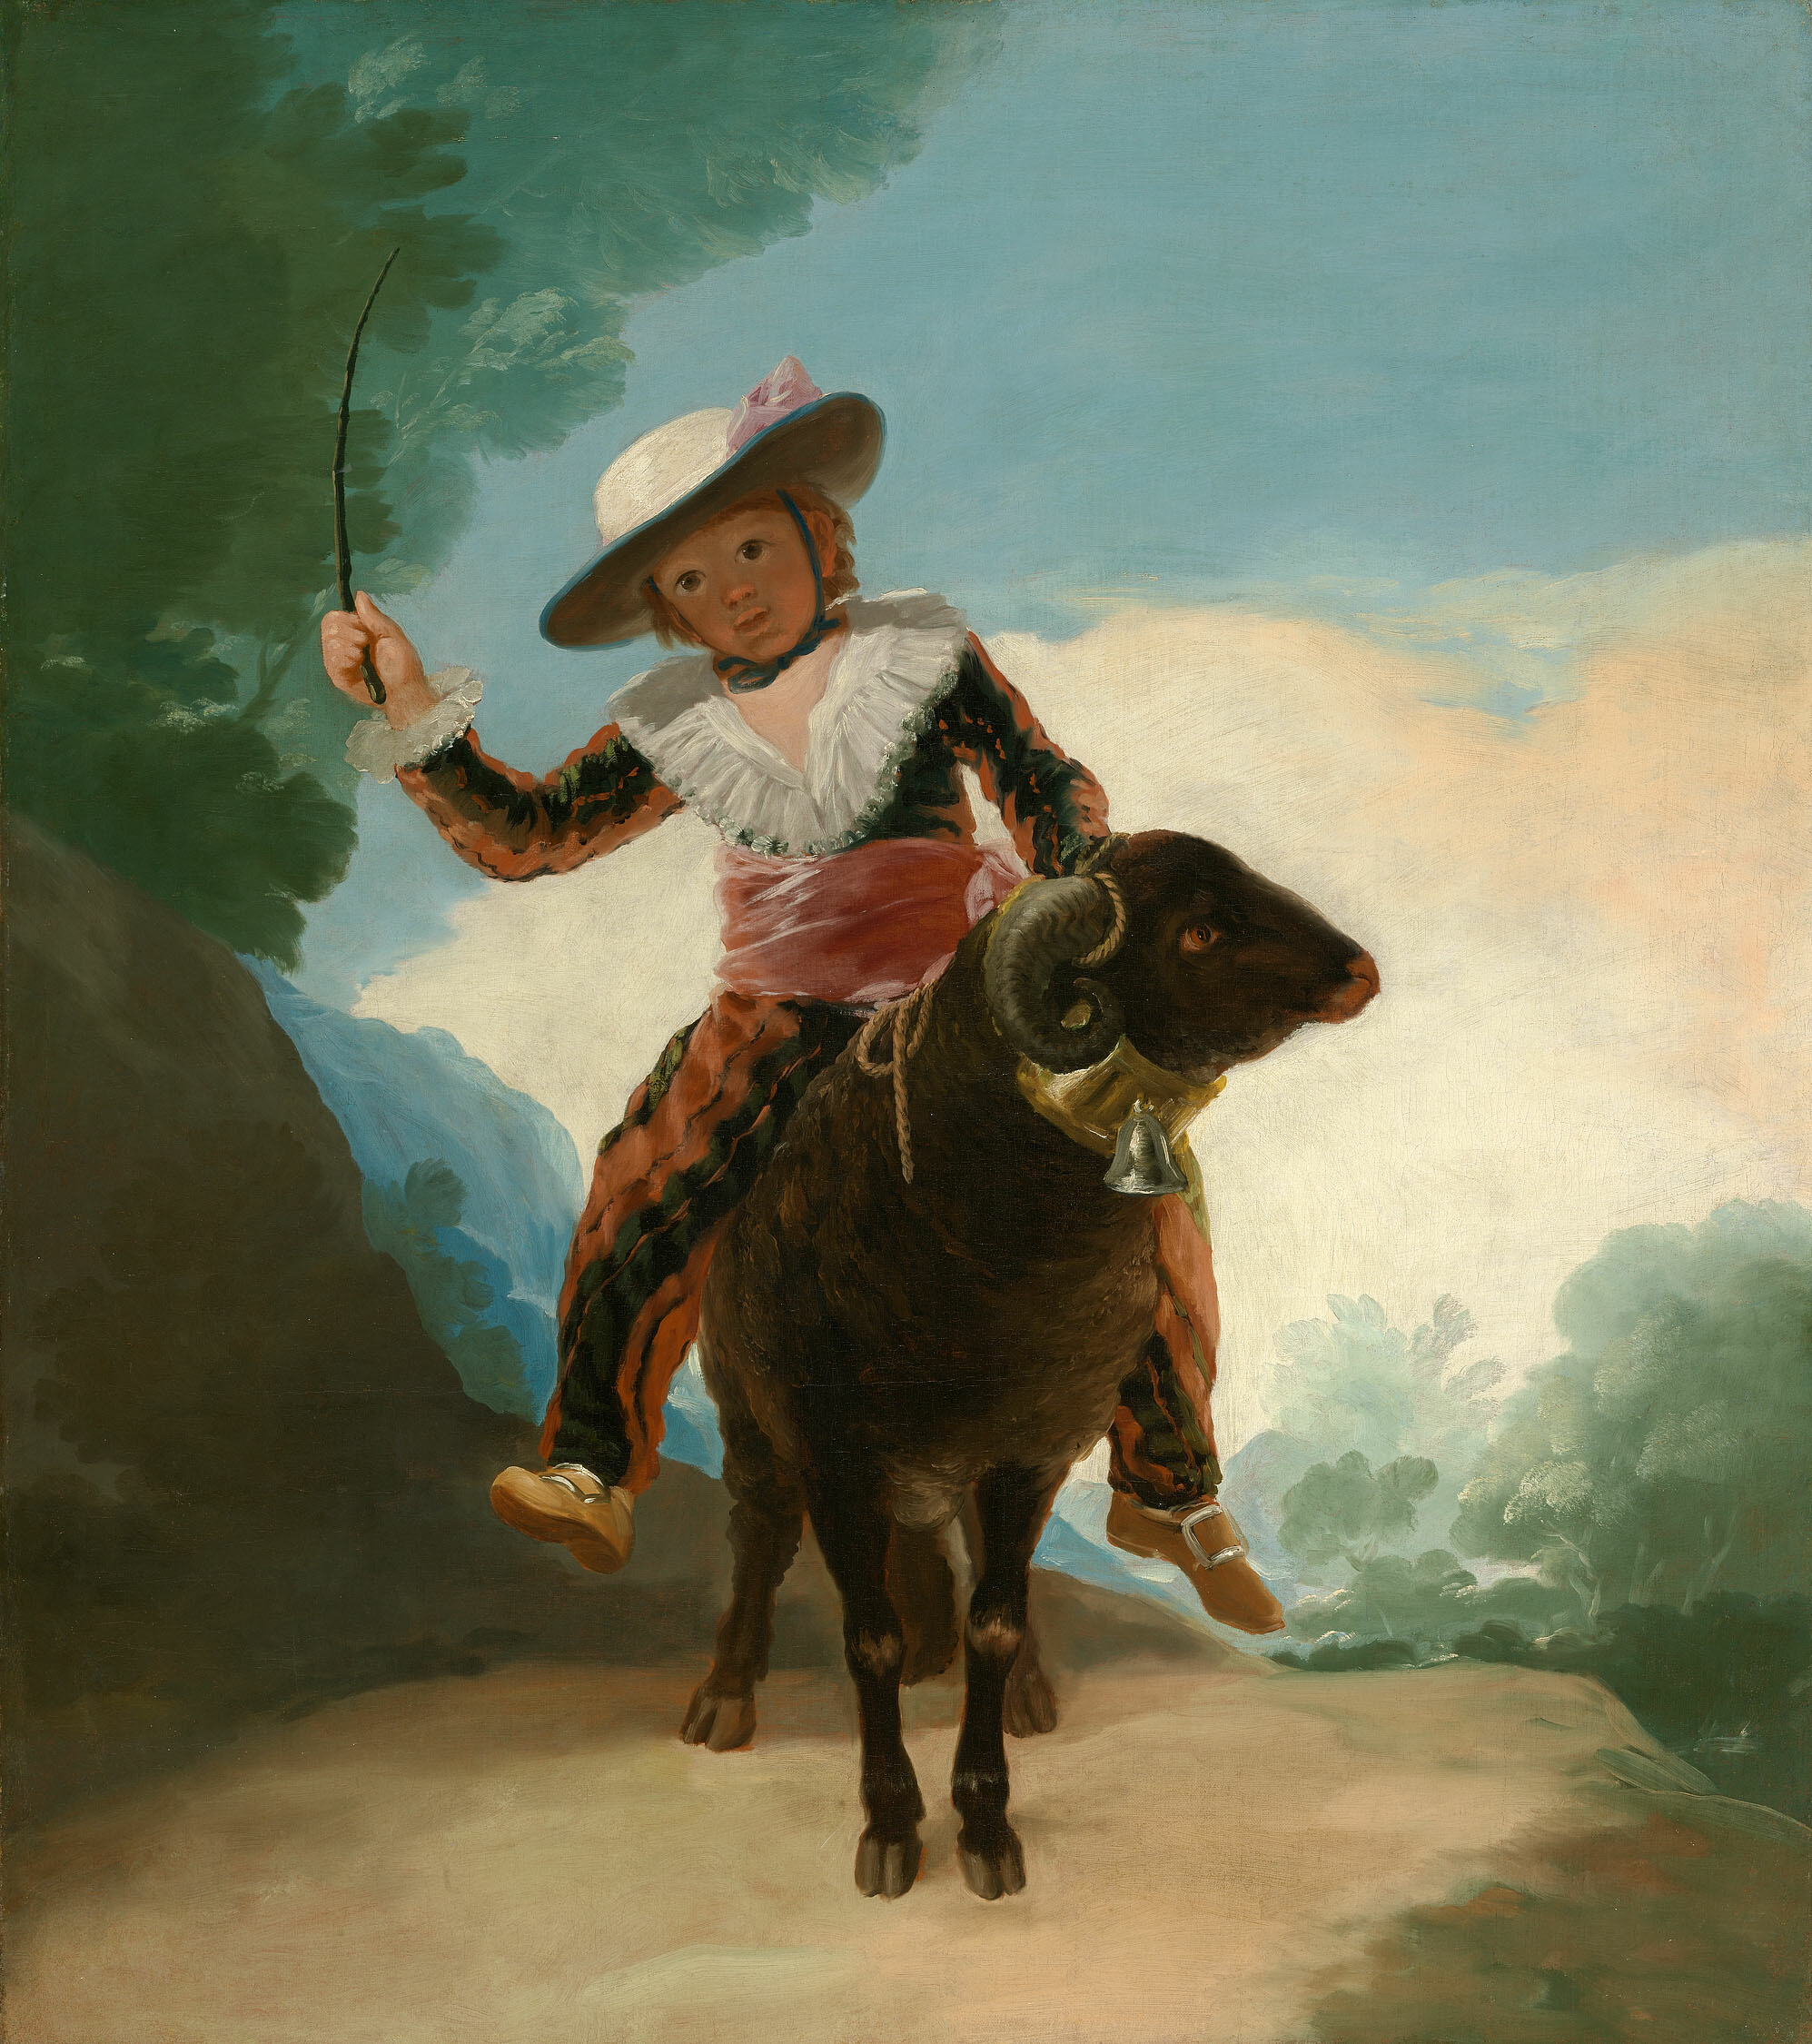 Chłopiec na baranie by Francisco Goya - 1786/87 - 127,2 × 112,1 cm 